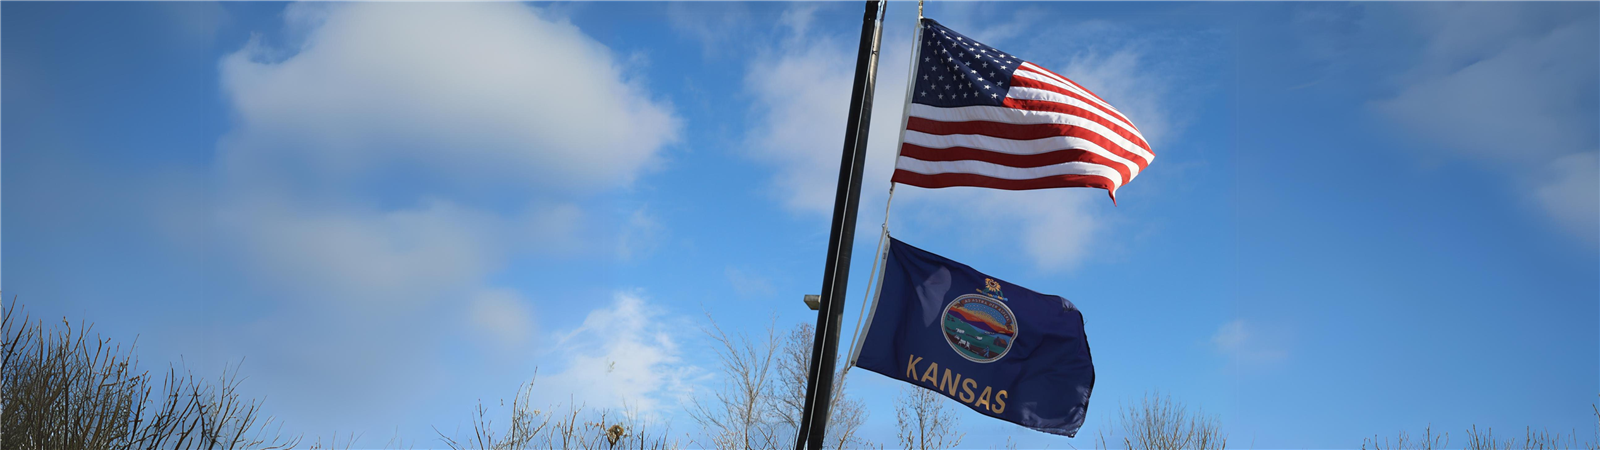 Image of American flag and Kansas flag